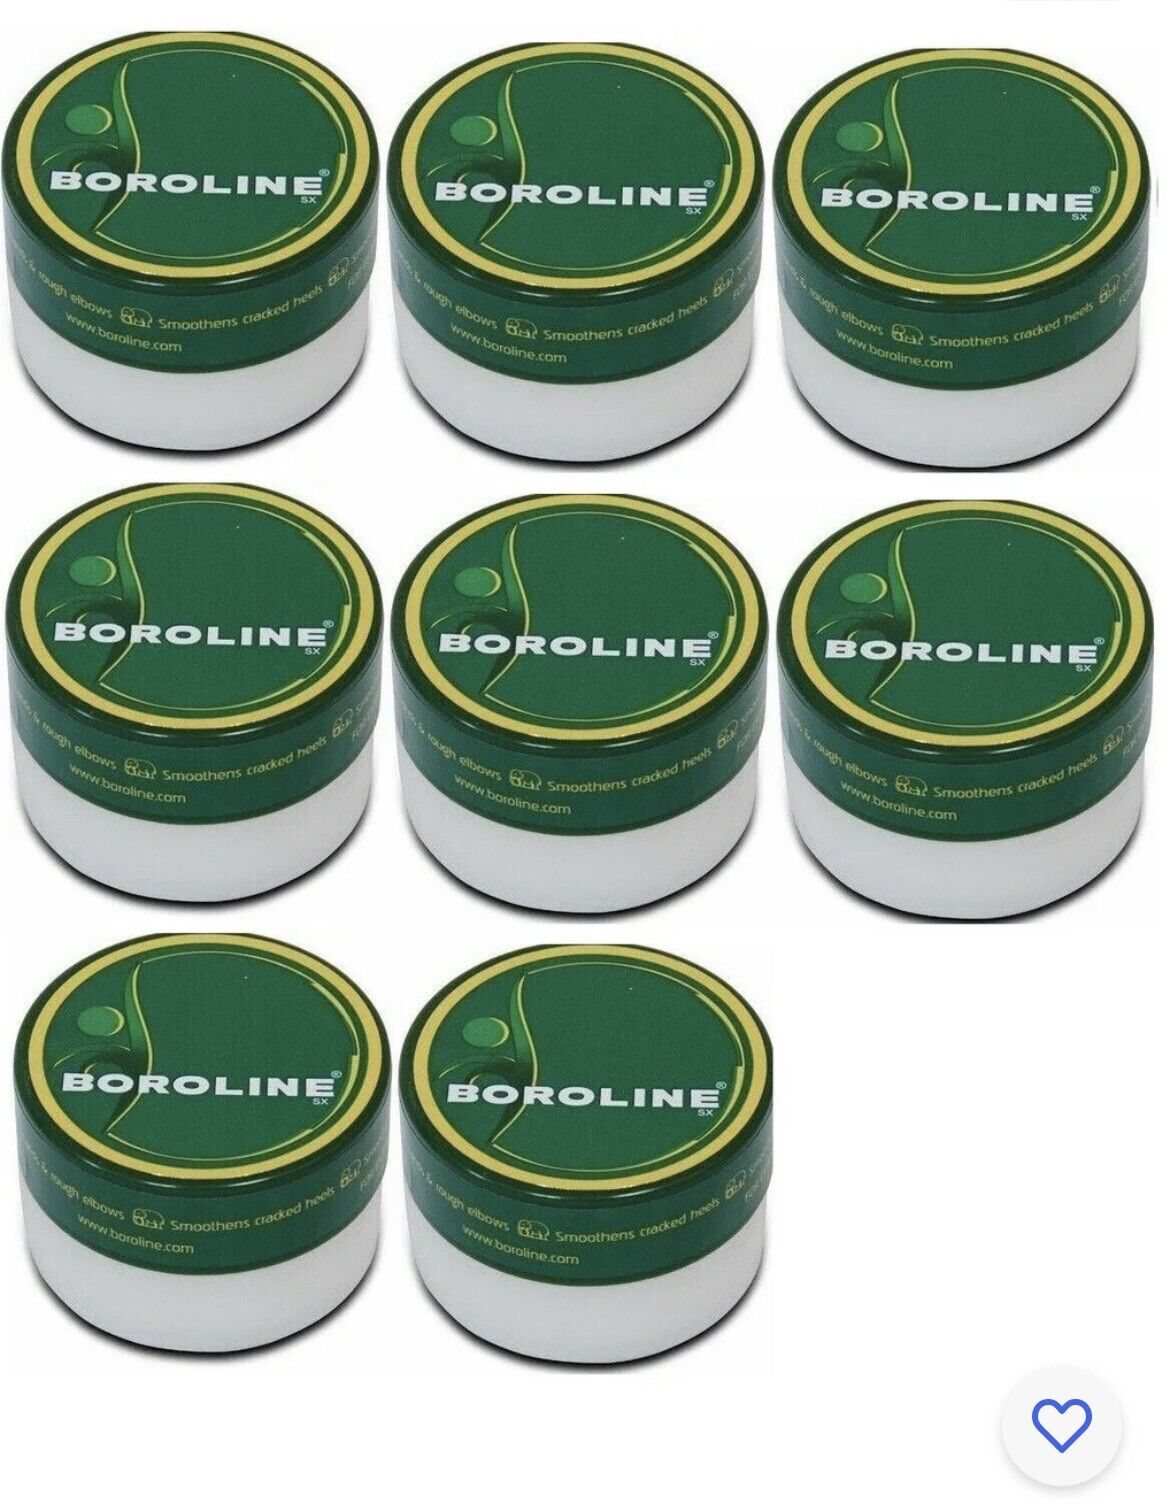 8 Packs x Boroline Antiseptic Ayurvedic Night Repair Cream 40g Each